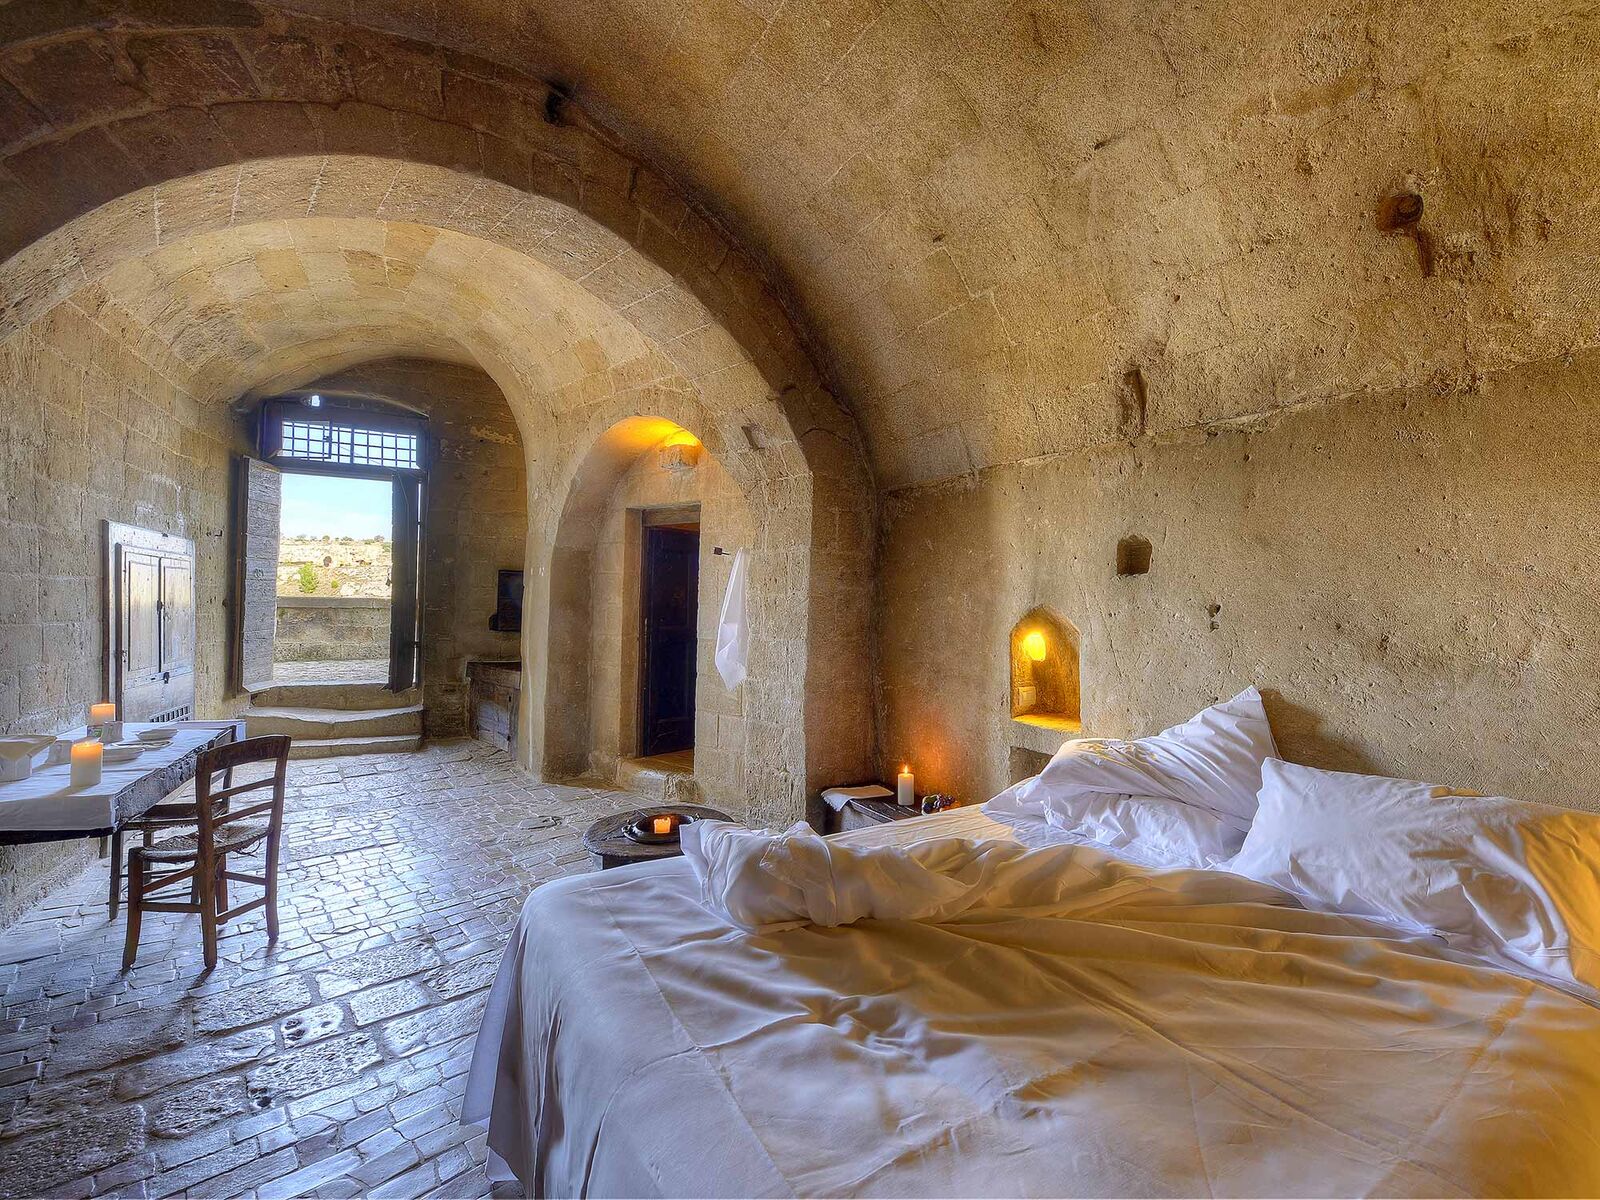 Chambre nichée dans les caves conservées de Matera en Italie, destination de l'agence de voyage Continents Insolites